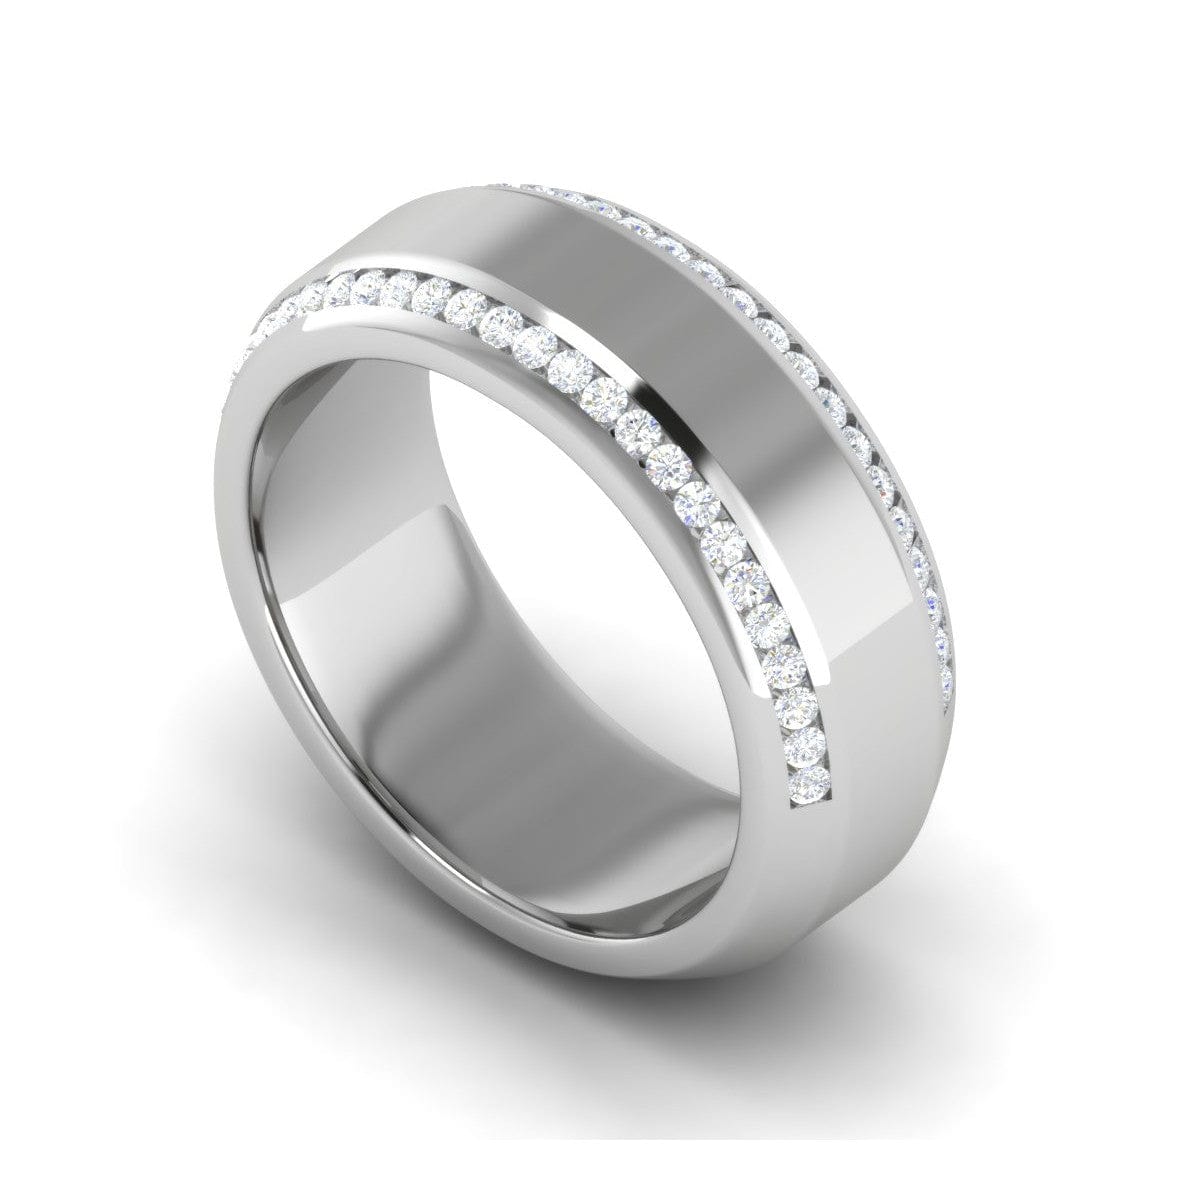 20 Beautiful Engagement Rings for Men - Bridal Musings